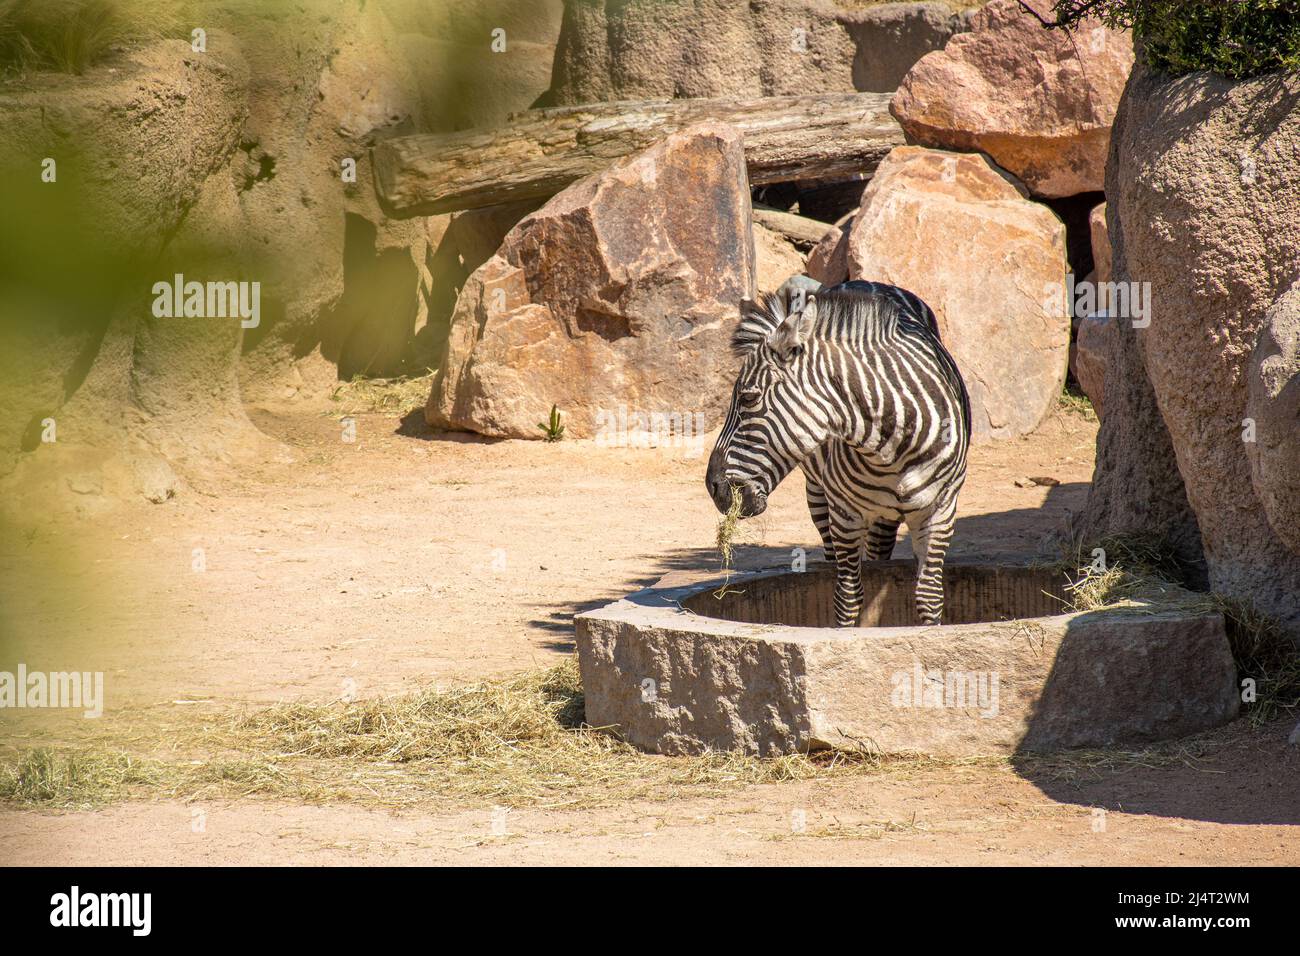 Belle pianure zebra o zebre che mangiano erba, ippotigris, equini africani con distintivi cappotti a strisce bianche e nere Foto Stock